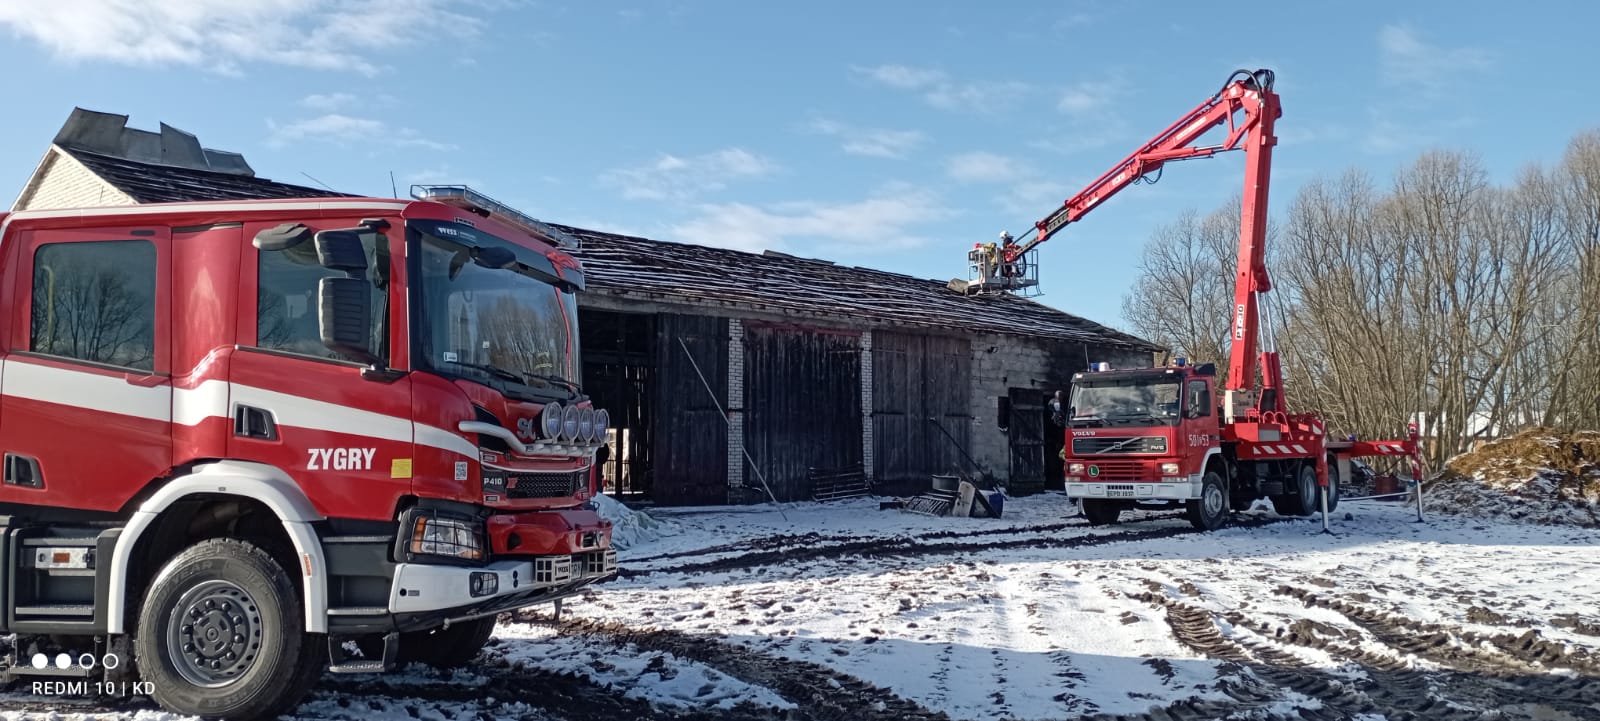 Po prawej stronie zdjęcia znajduje się podnośnik pożarniczy, który bierze udział podczas usuwania skutków nawałnicy. Po środku znajduje się budynek inwentarsko-składowy z zerwanym poszyciem dachu. Po lewej stronie znajduje się pojazd pożarniczy OSP KSRG. 